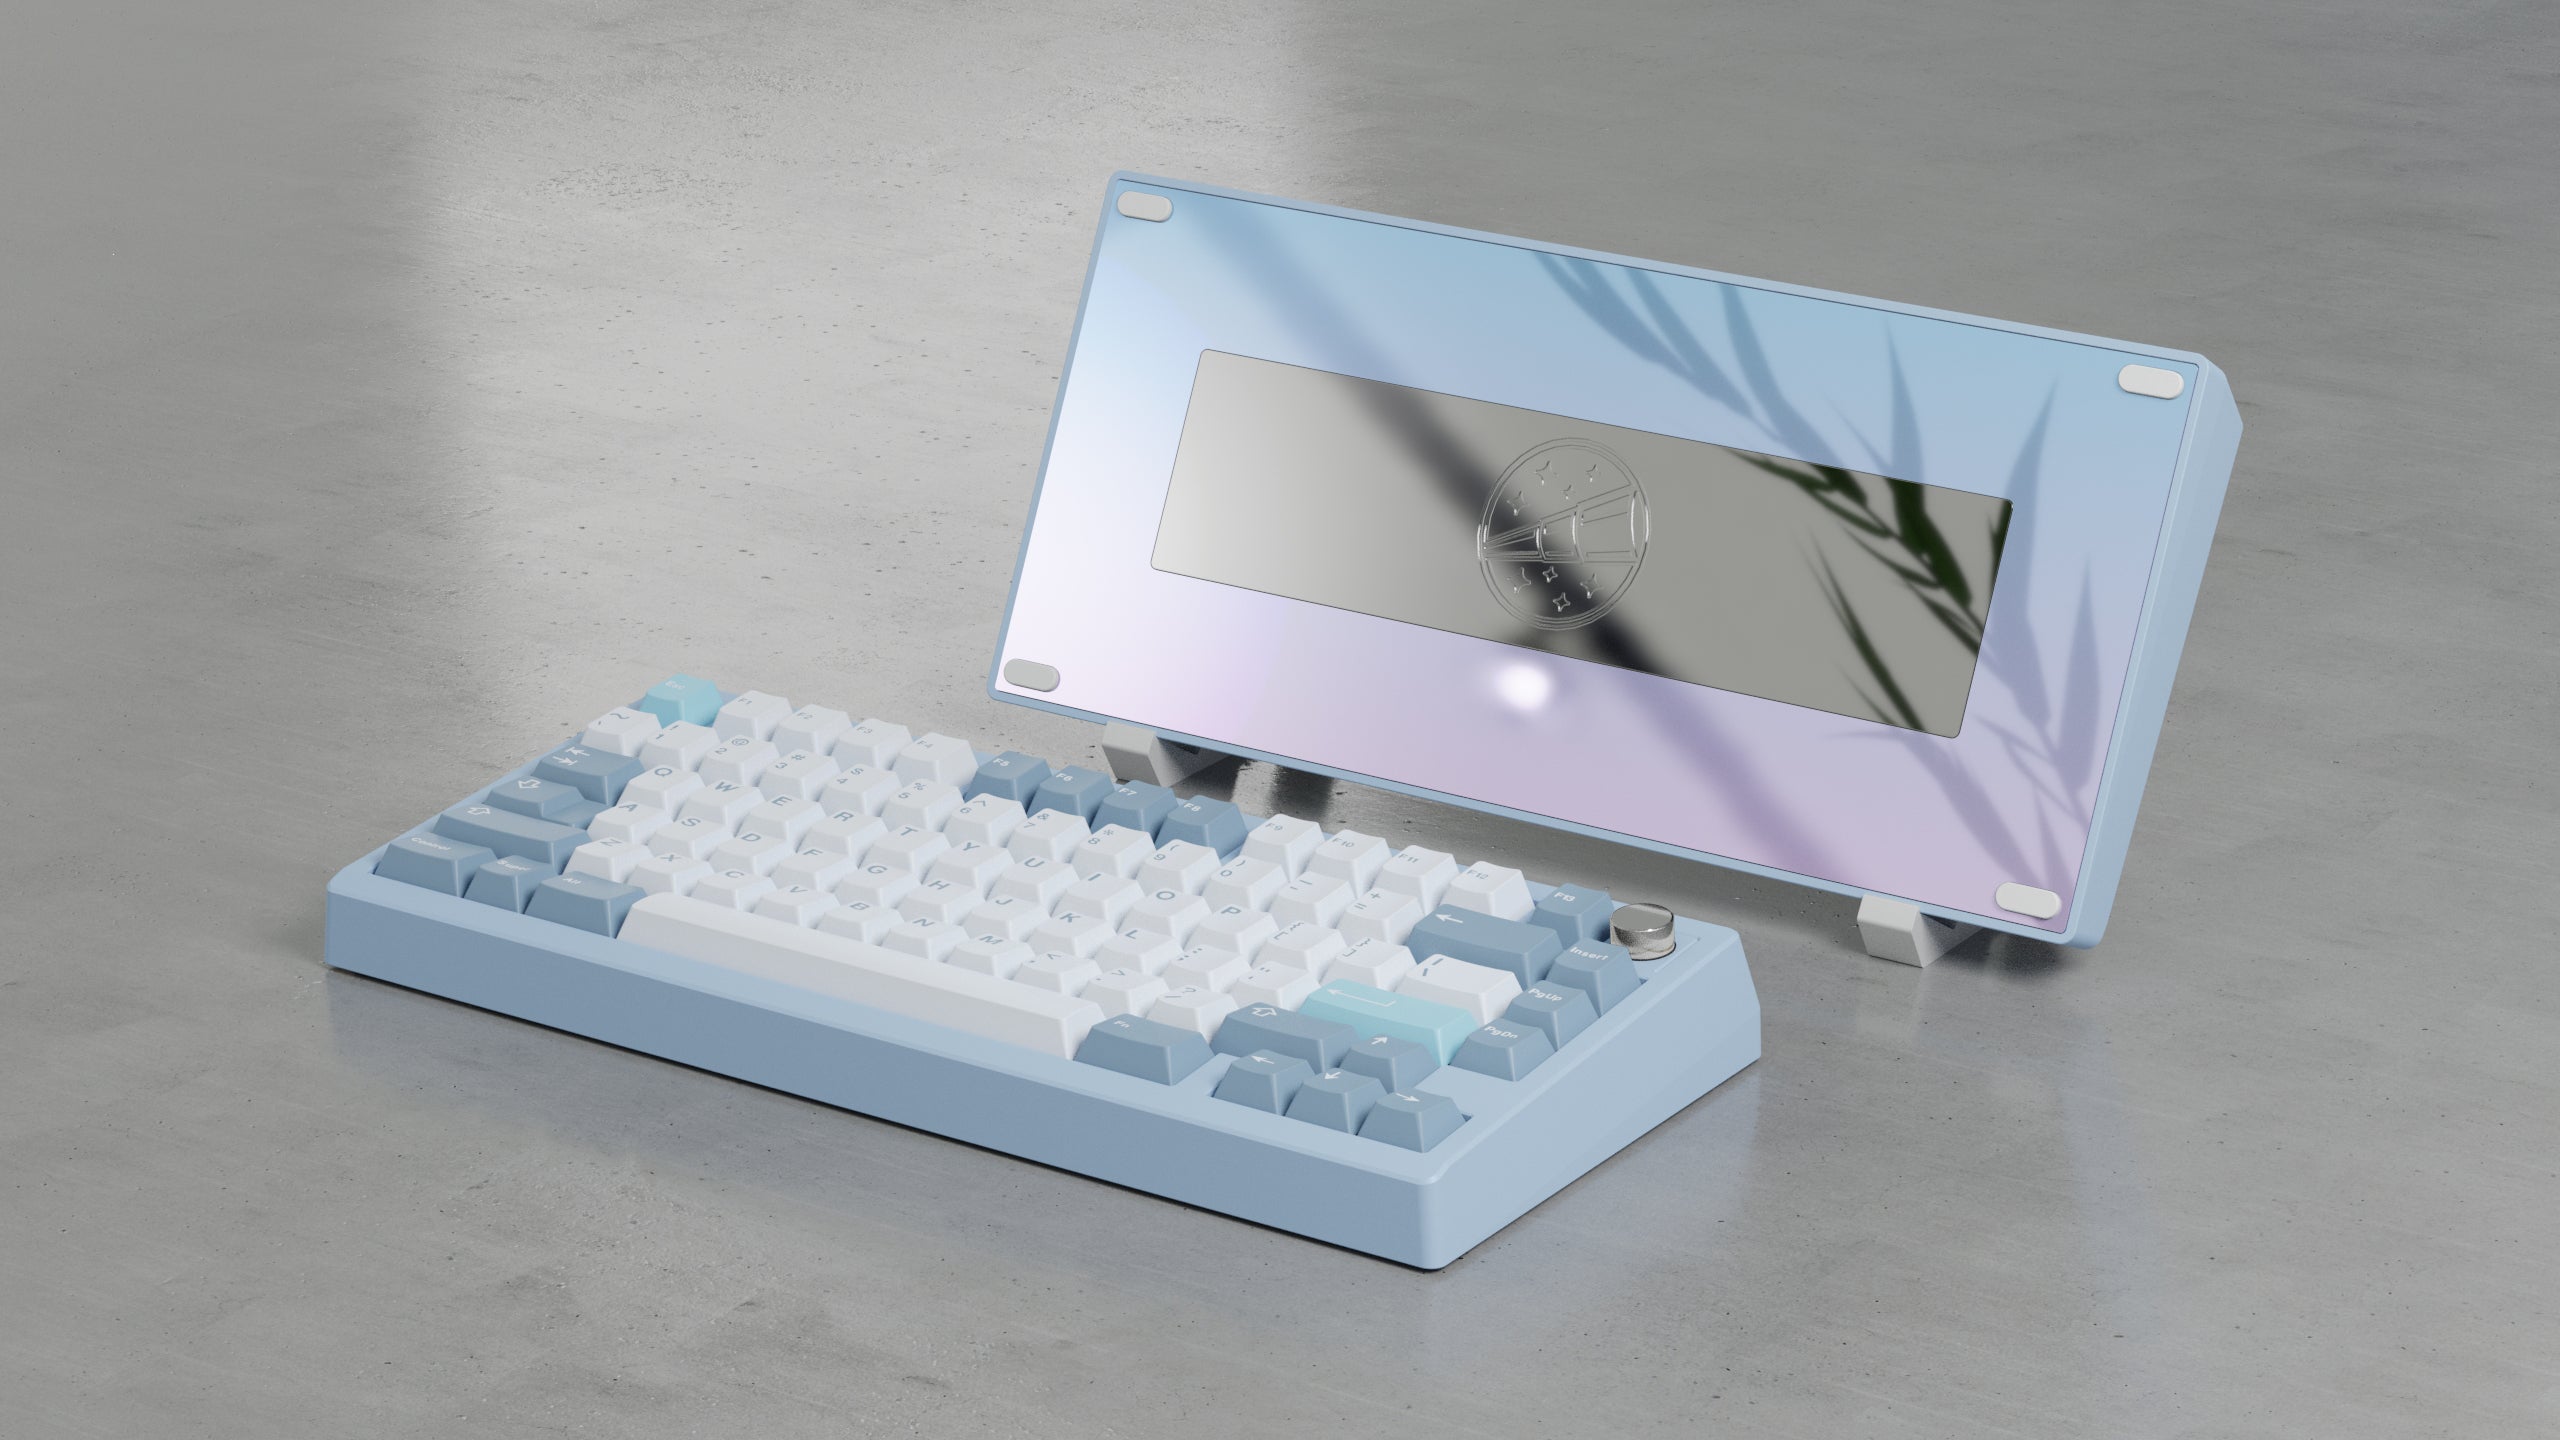 Zoom75 EE Keyboard - Sky Blue [Preorder]